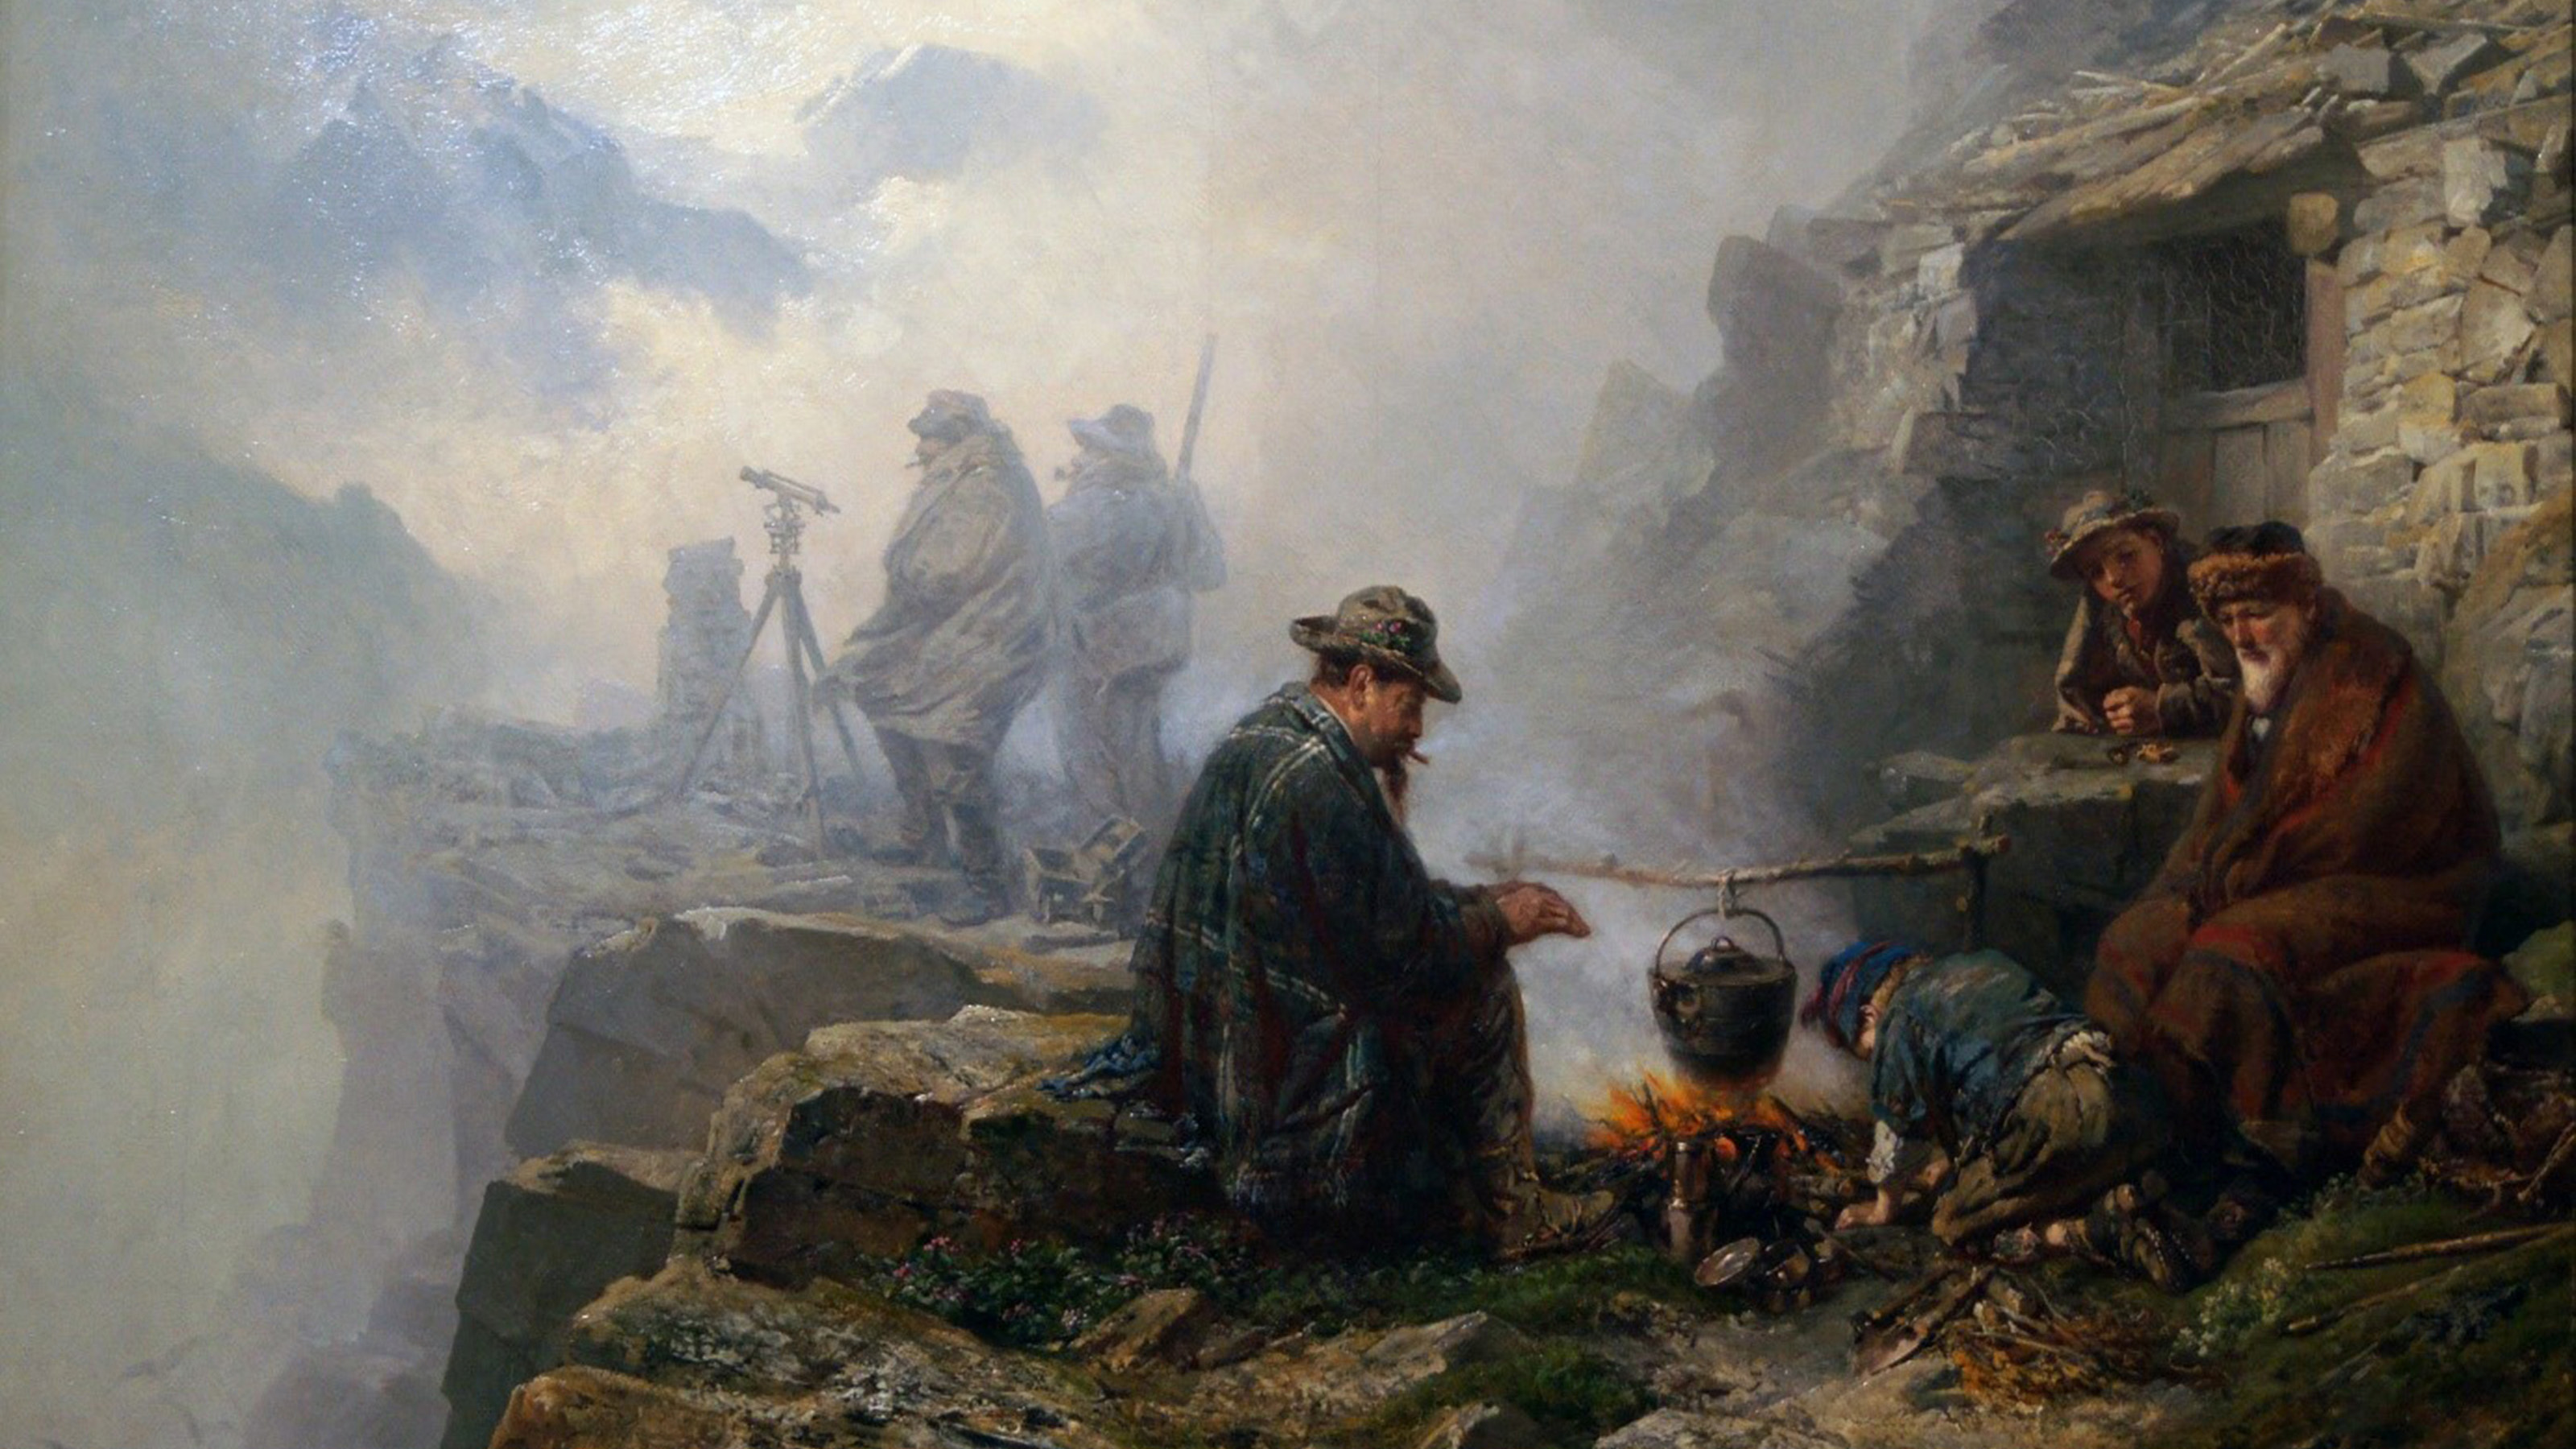 Das Gemälde zeigt vier Personen, die sich um ein Lagerfeuer in gebirgigem Gelände gesellen. Im Hintergrund stehen zwei Männer hinter einem Theodolit im Nebel.